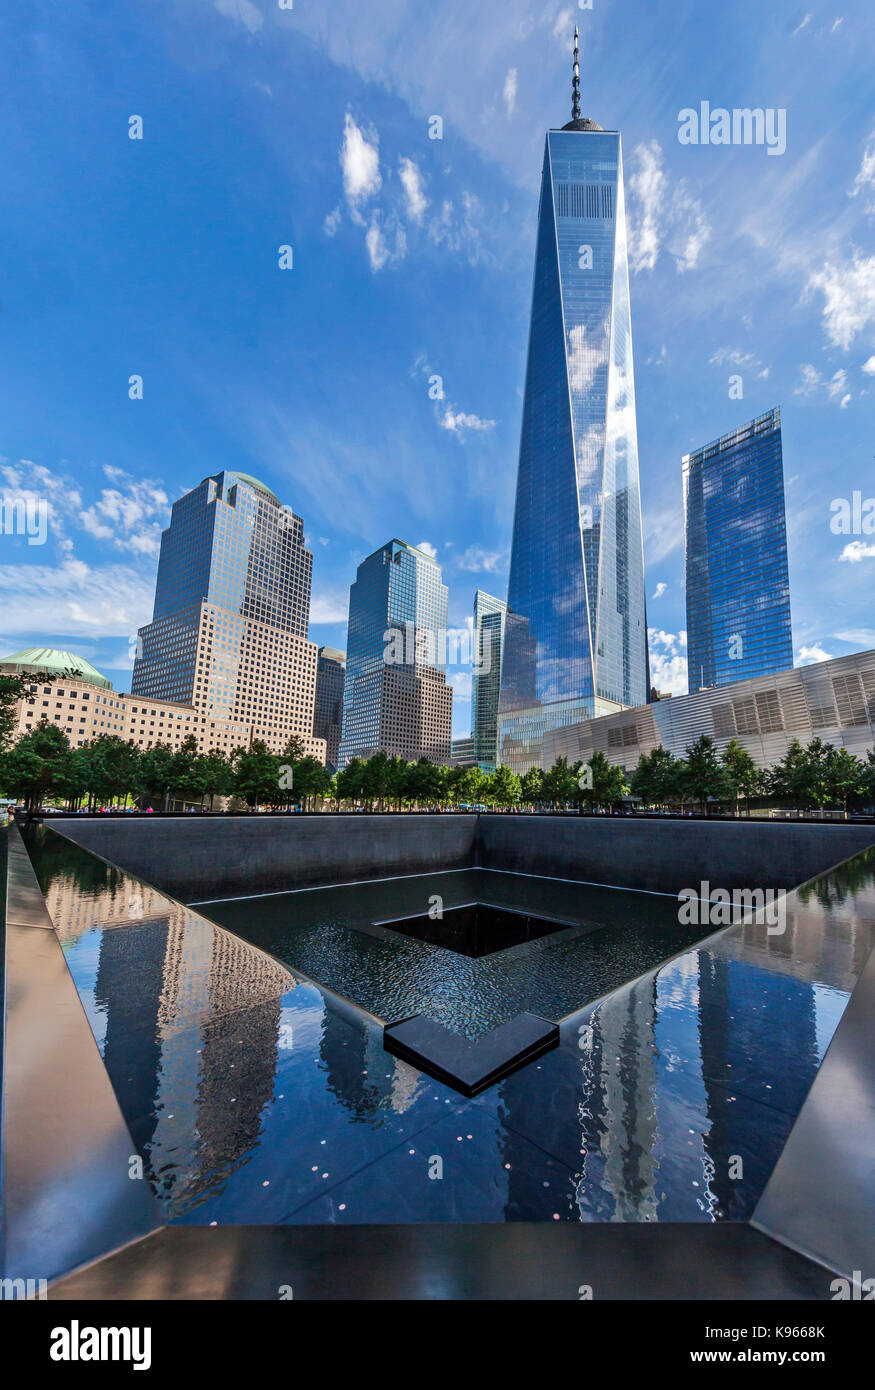 Les touristes et les visiteurs visiter le mémorial du 11 septembre piscine du Sud avec la tour de la liberté en arrière-plan. Banque D'Images